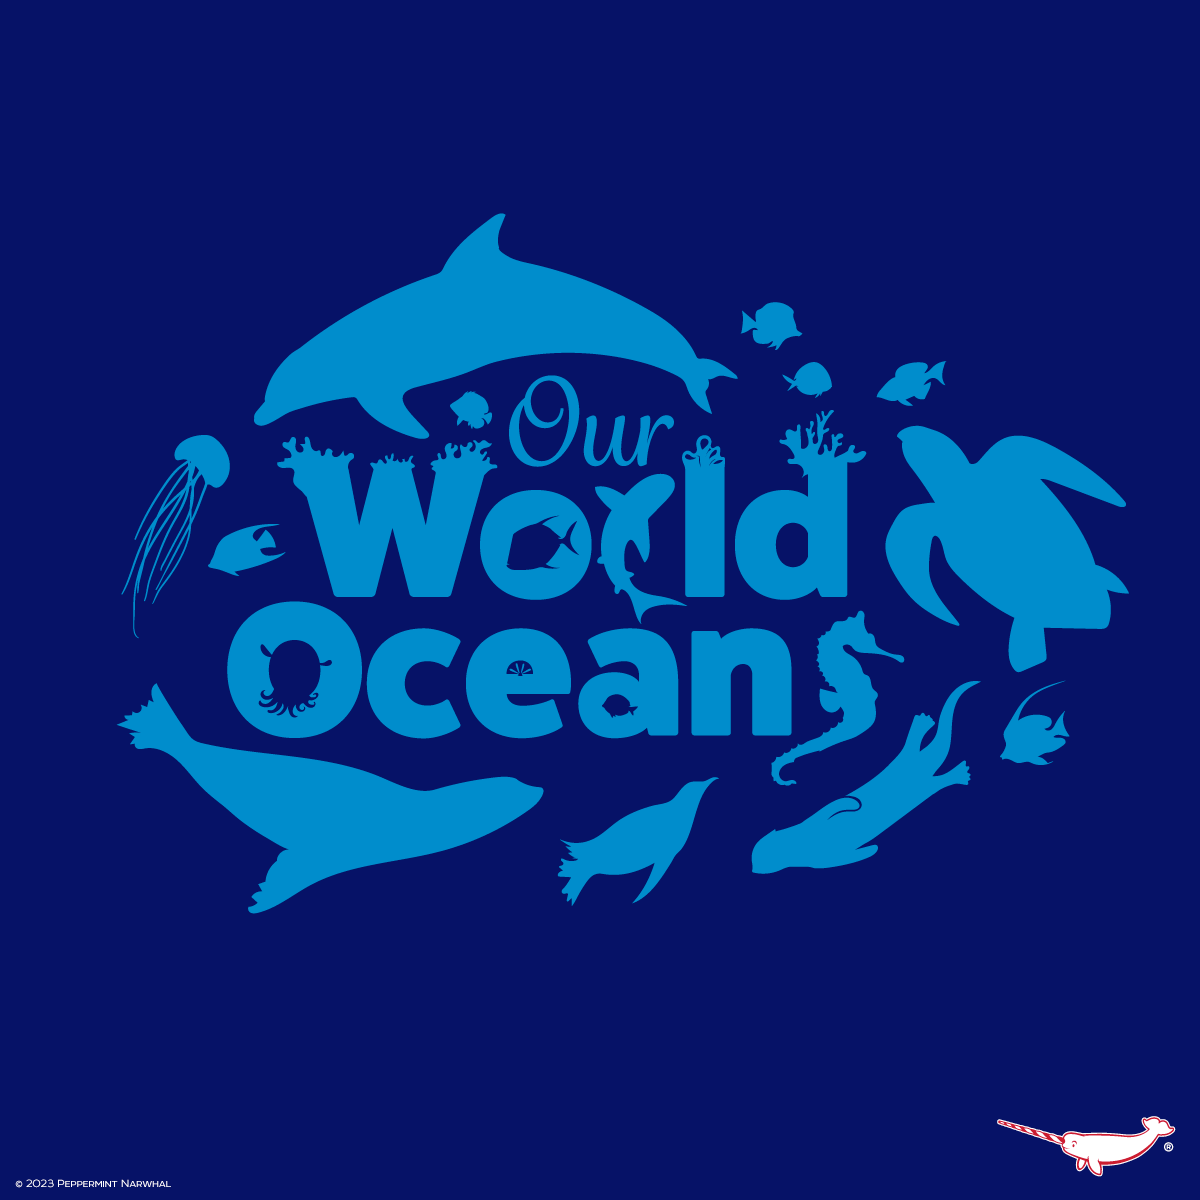 #OurWorldOceansMonth

Endangered 5 #EnamelPins #Kickstarter tinyurl.com/2n8pe326

#PeppermintNarwhal store peppermintnarwhal.com

#WorldOceansMonth #OurWorldOceans #OceansMonth #Ocean